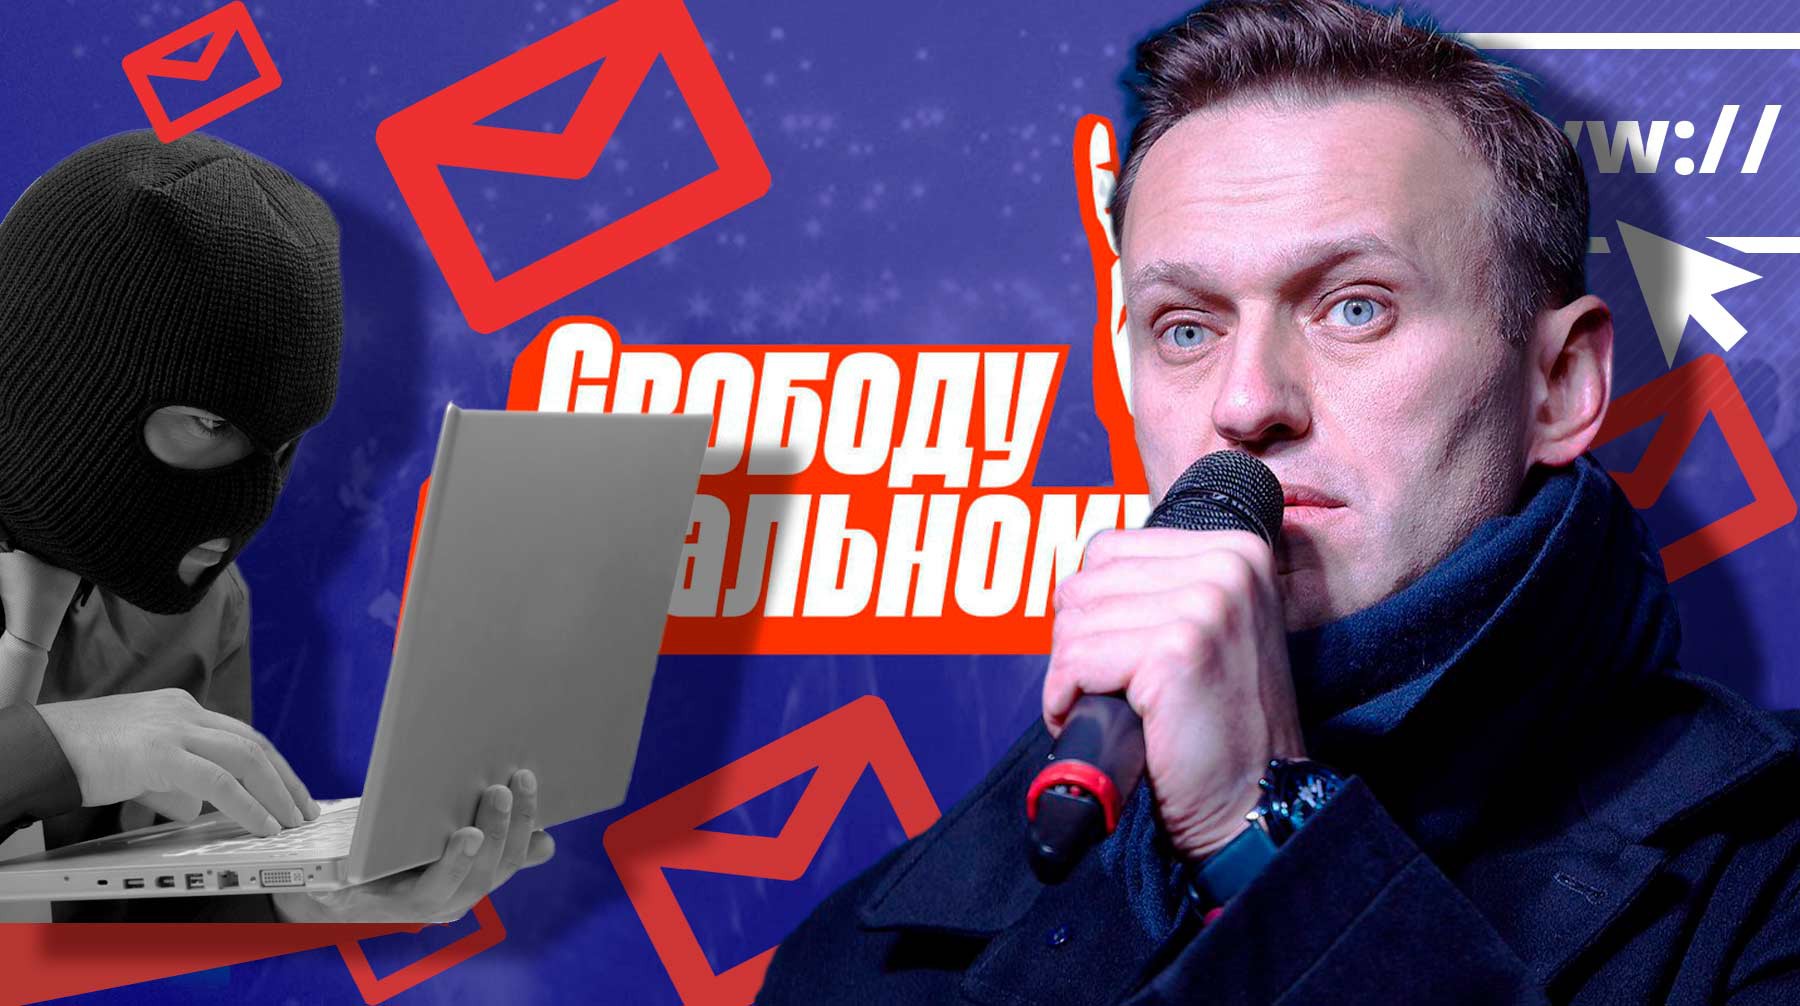 Dailystorm - «Ничего страшного». Несистемная оппозиция не увидела угрозы участникам акции «Свободу Навальному!» из-за утечки данных